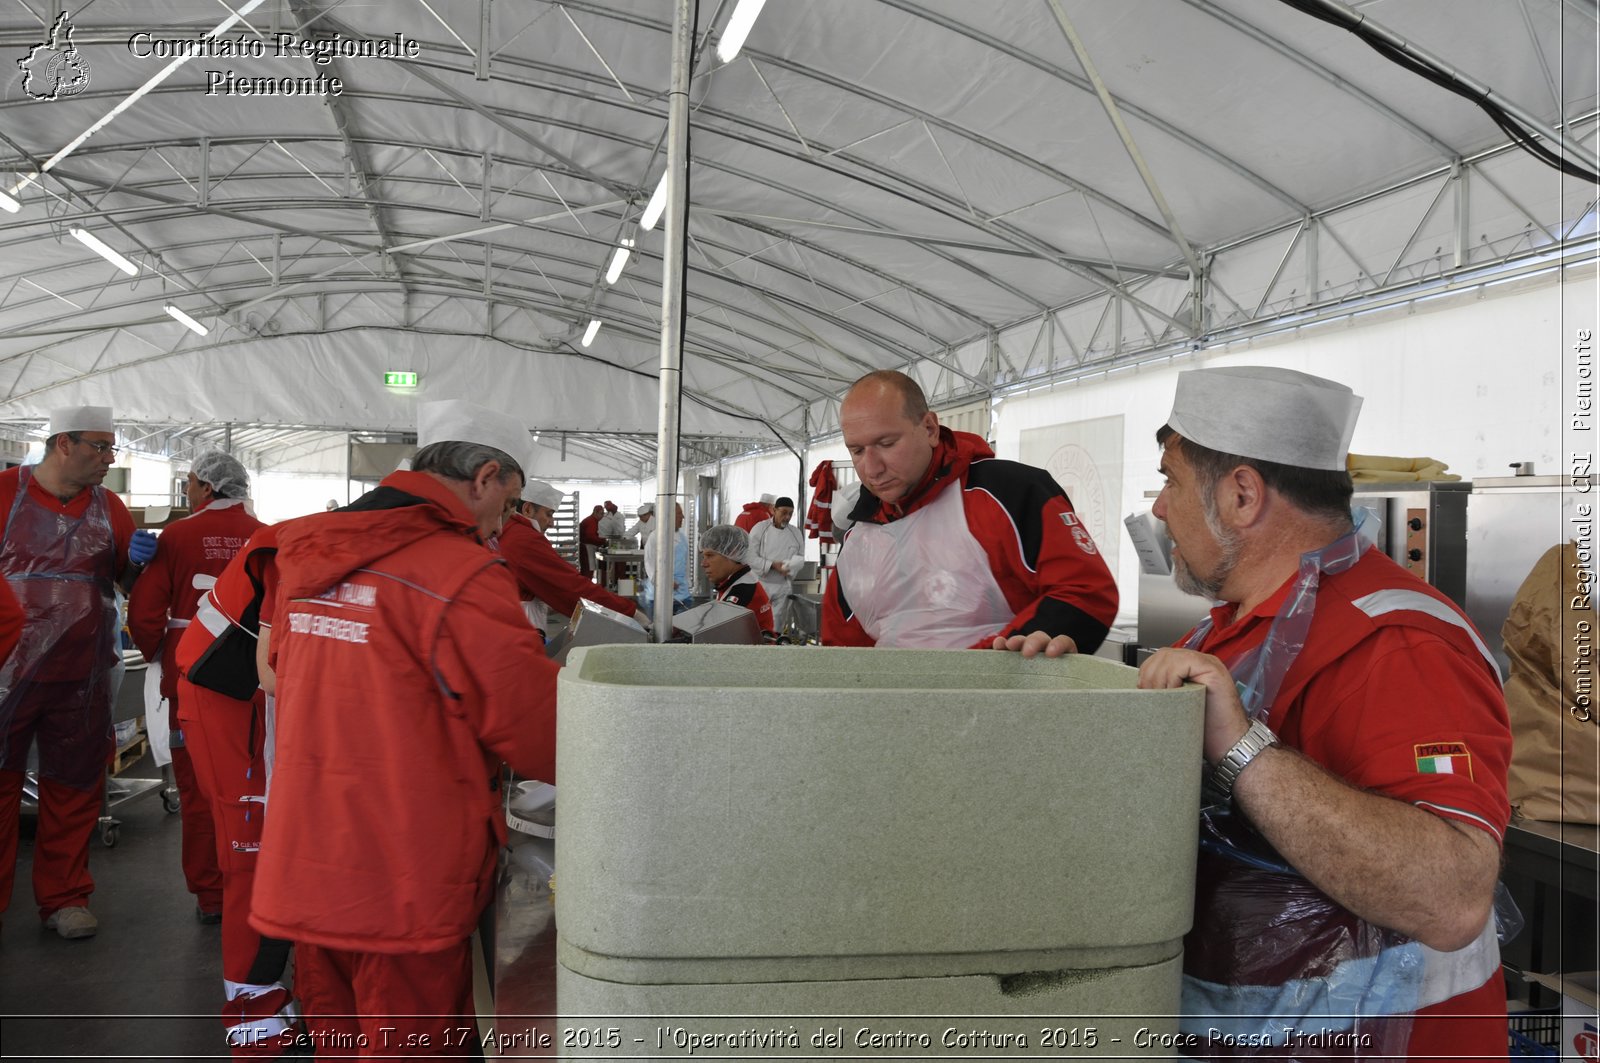 CIE Settimo T.se 17 Aprile 2015 - l'operativit del Centro Cottura 2015 - Croce Rossa Italiana- Comitato Regionale del Piemonte